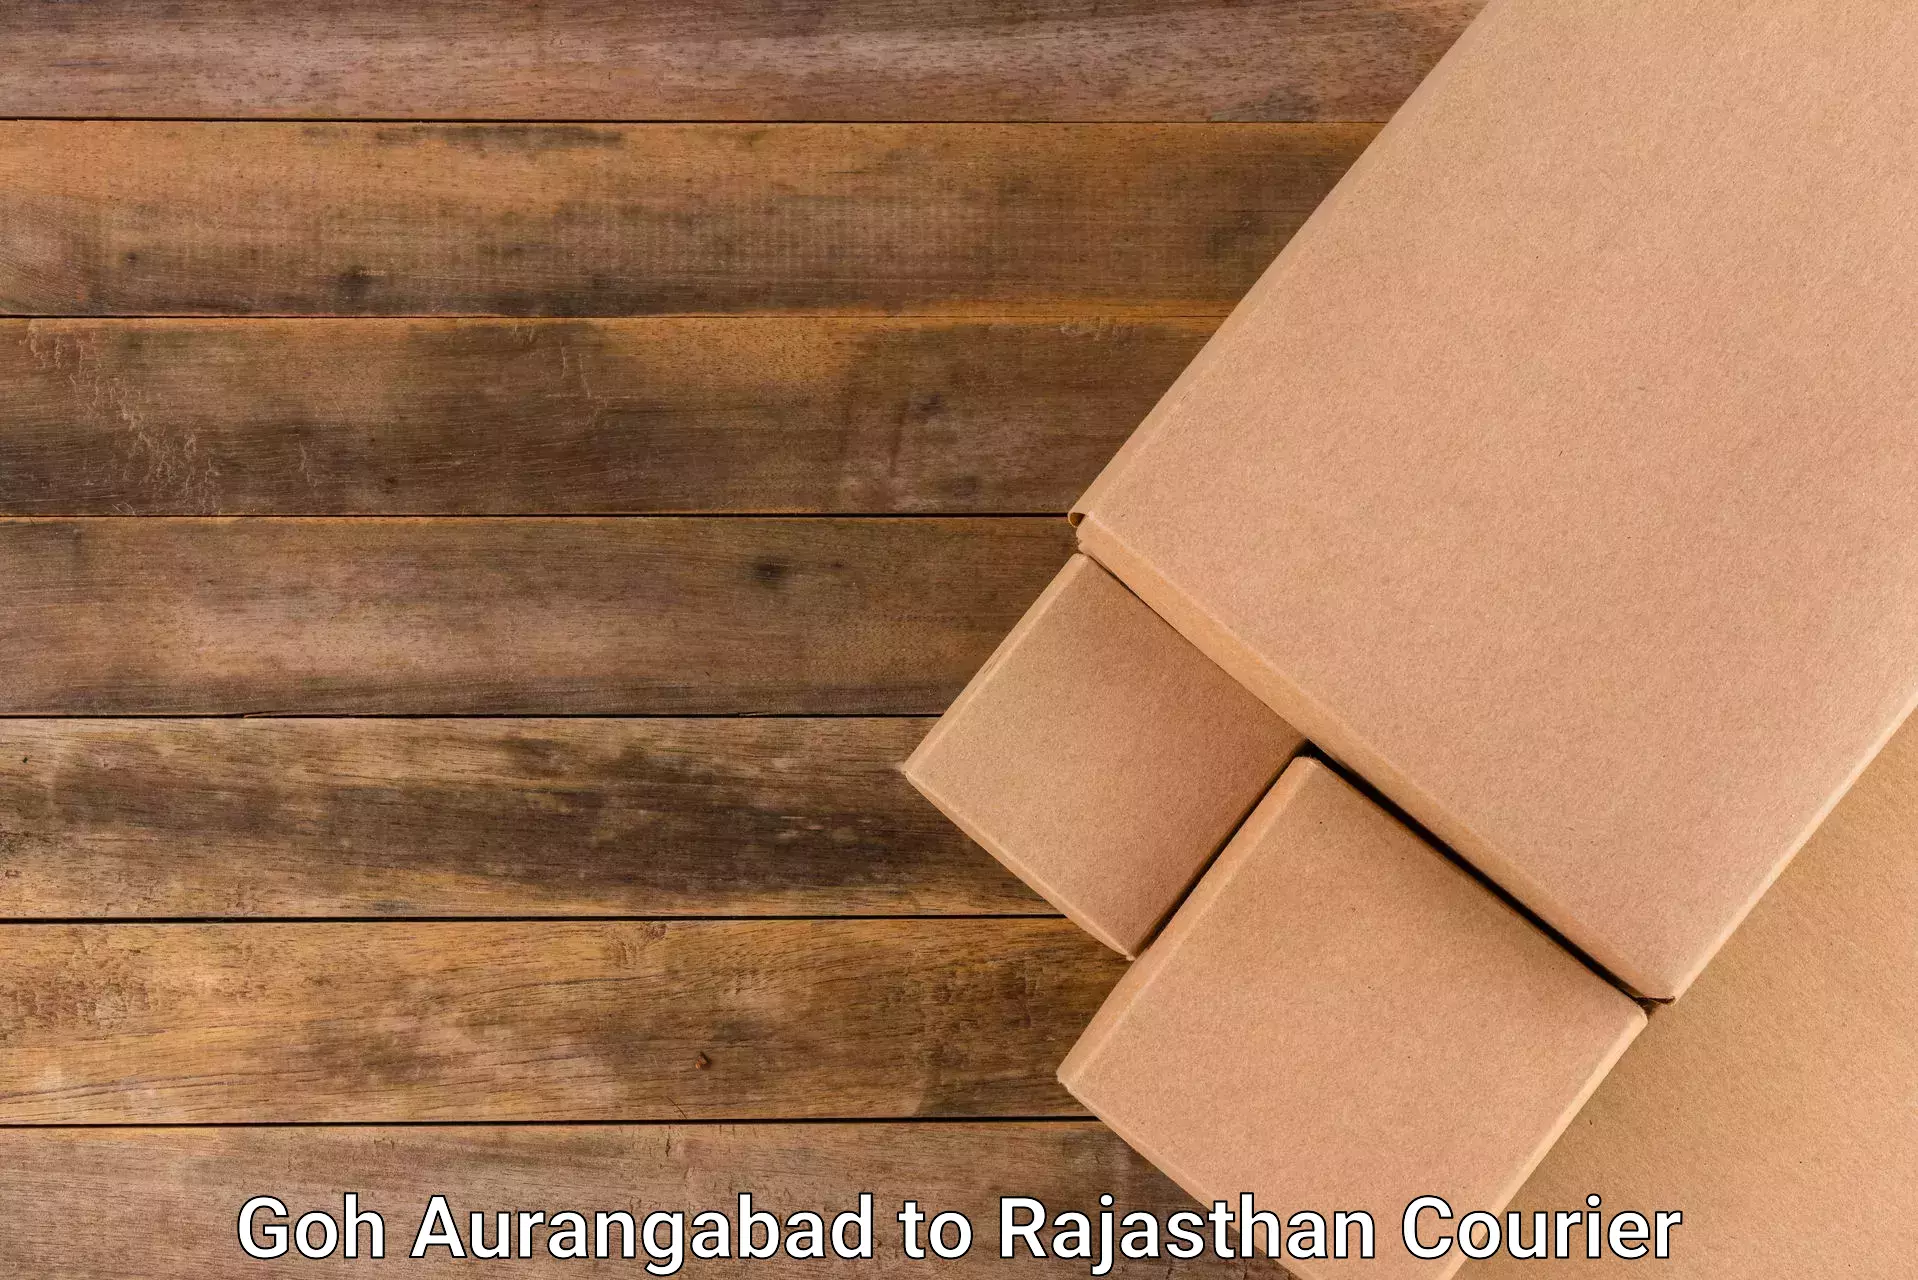 Efficient shipping platforms Goh Aurangabad to Rajasthan